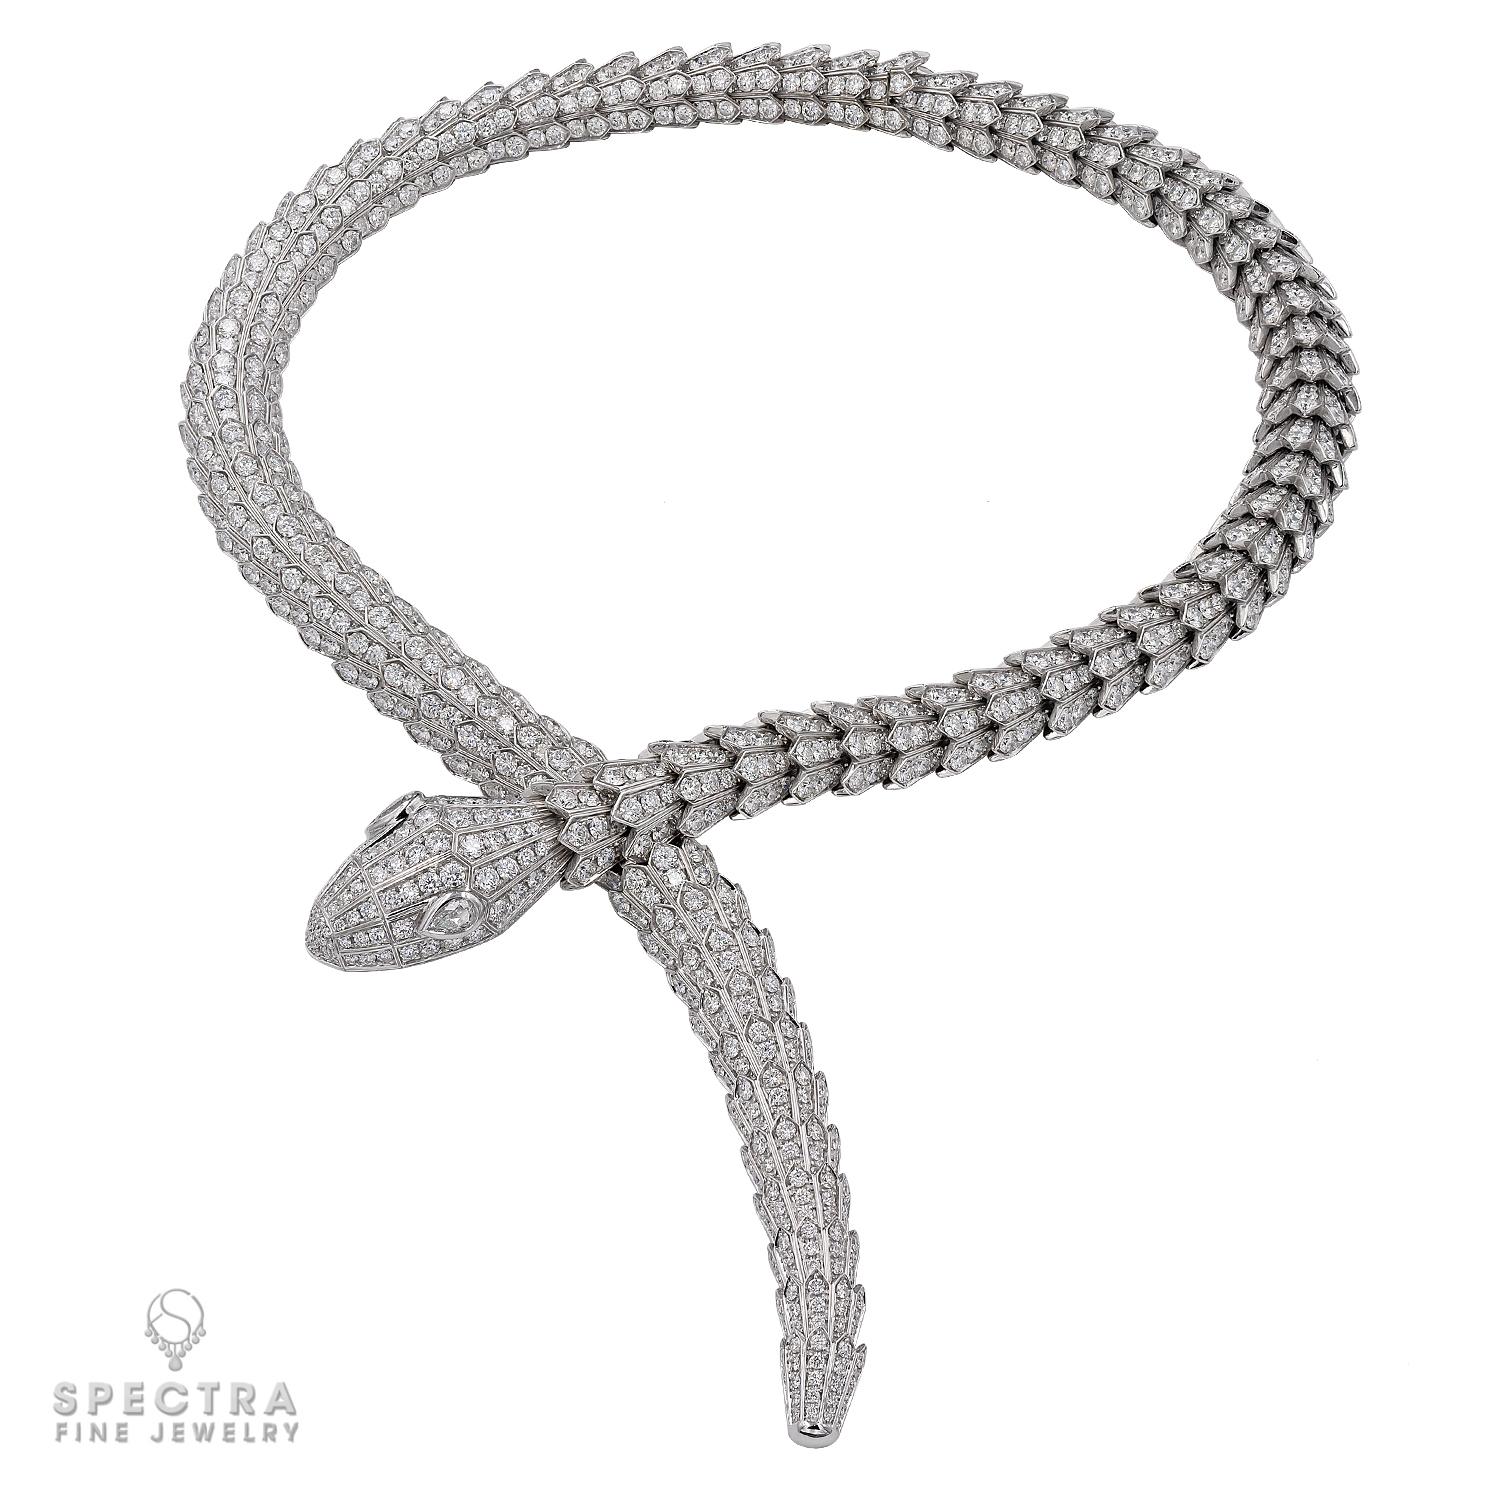 Als Hommage an sein geistiges Tier fängt Bulgari die Kraft der Verführung in diesem Serpenti Diamond High Jewelry Collier ein und tarnt Sinnlichkeit und Verführung mit einem hypnotischen Design. Raffiniert und glamourös schlängelt sich dieses